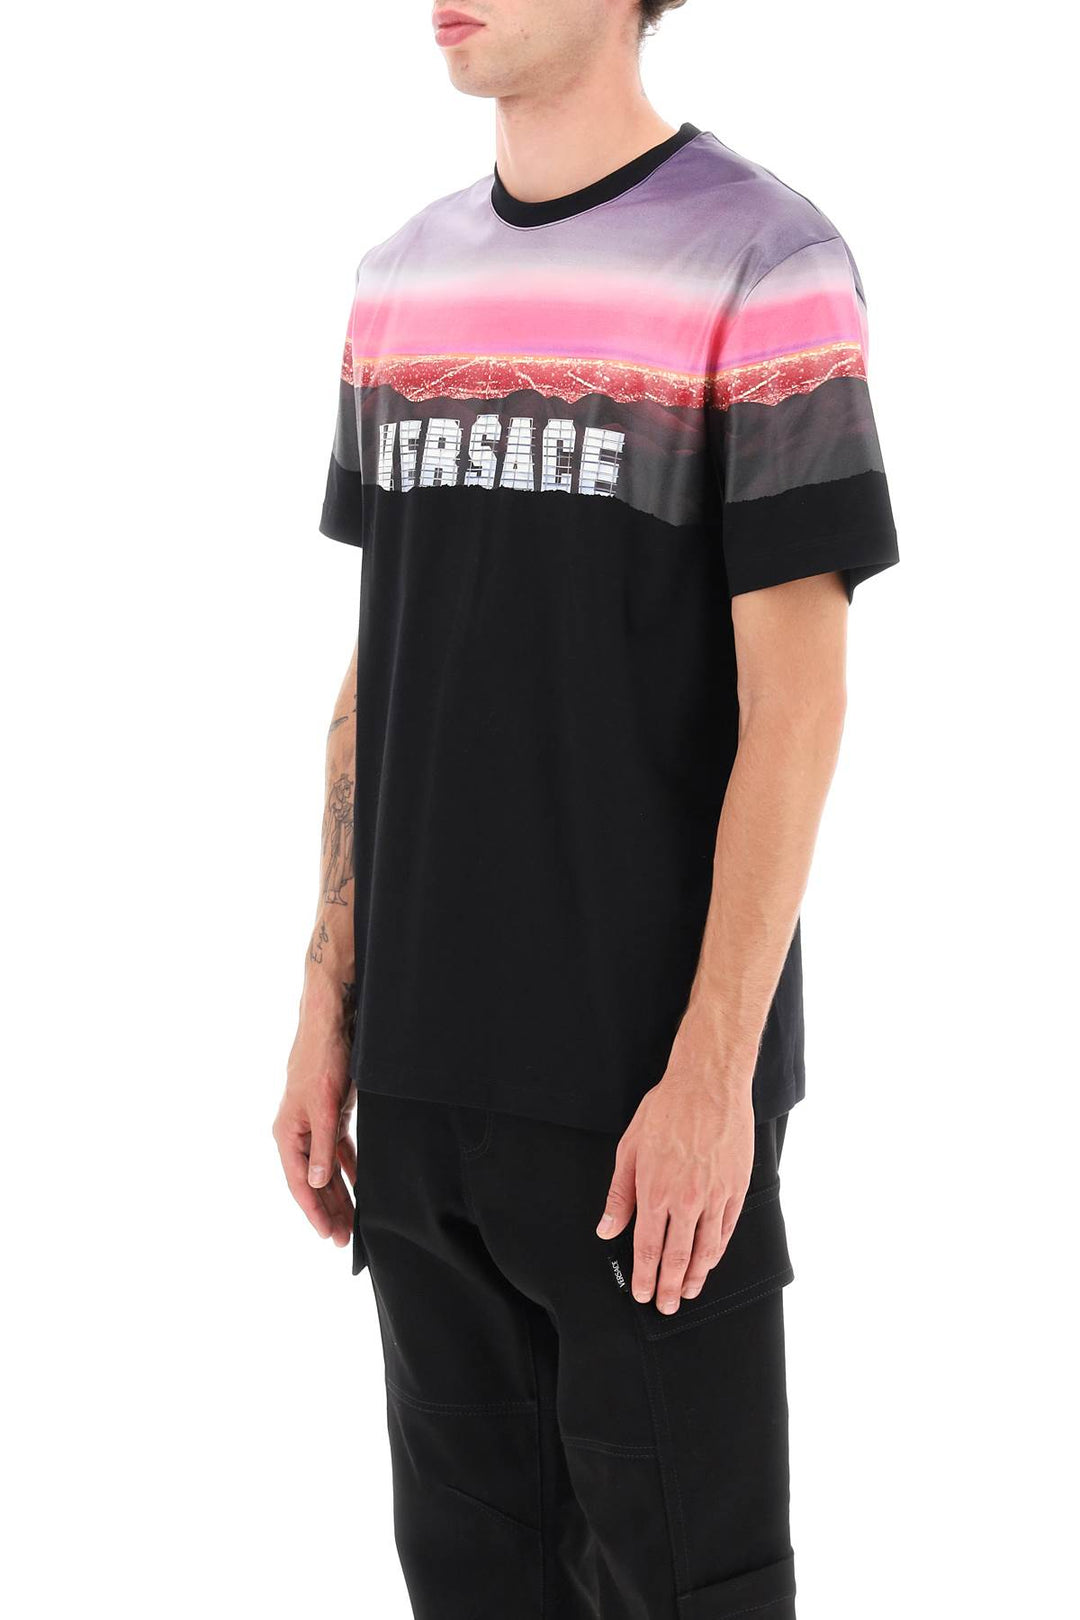 Versace Hills T Shirt   Nero